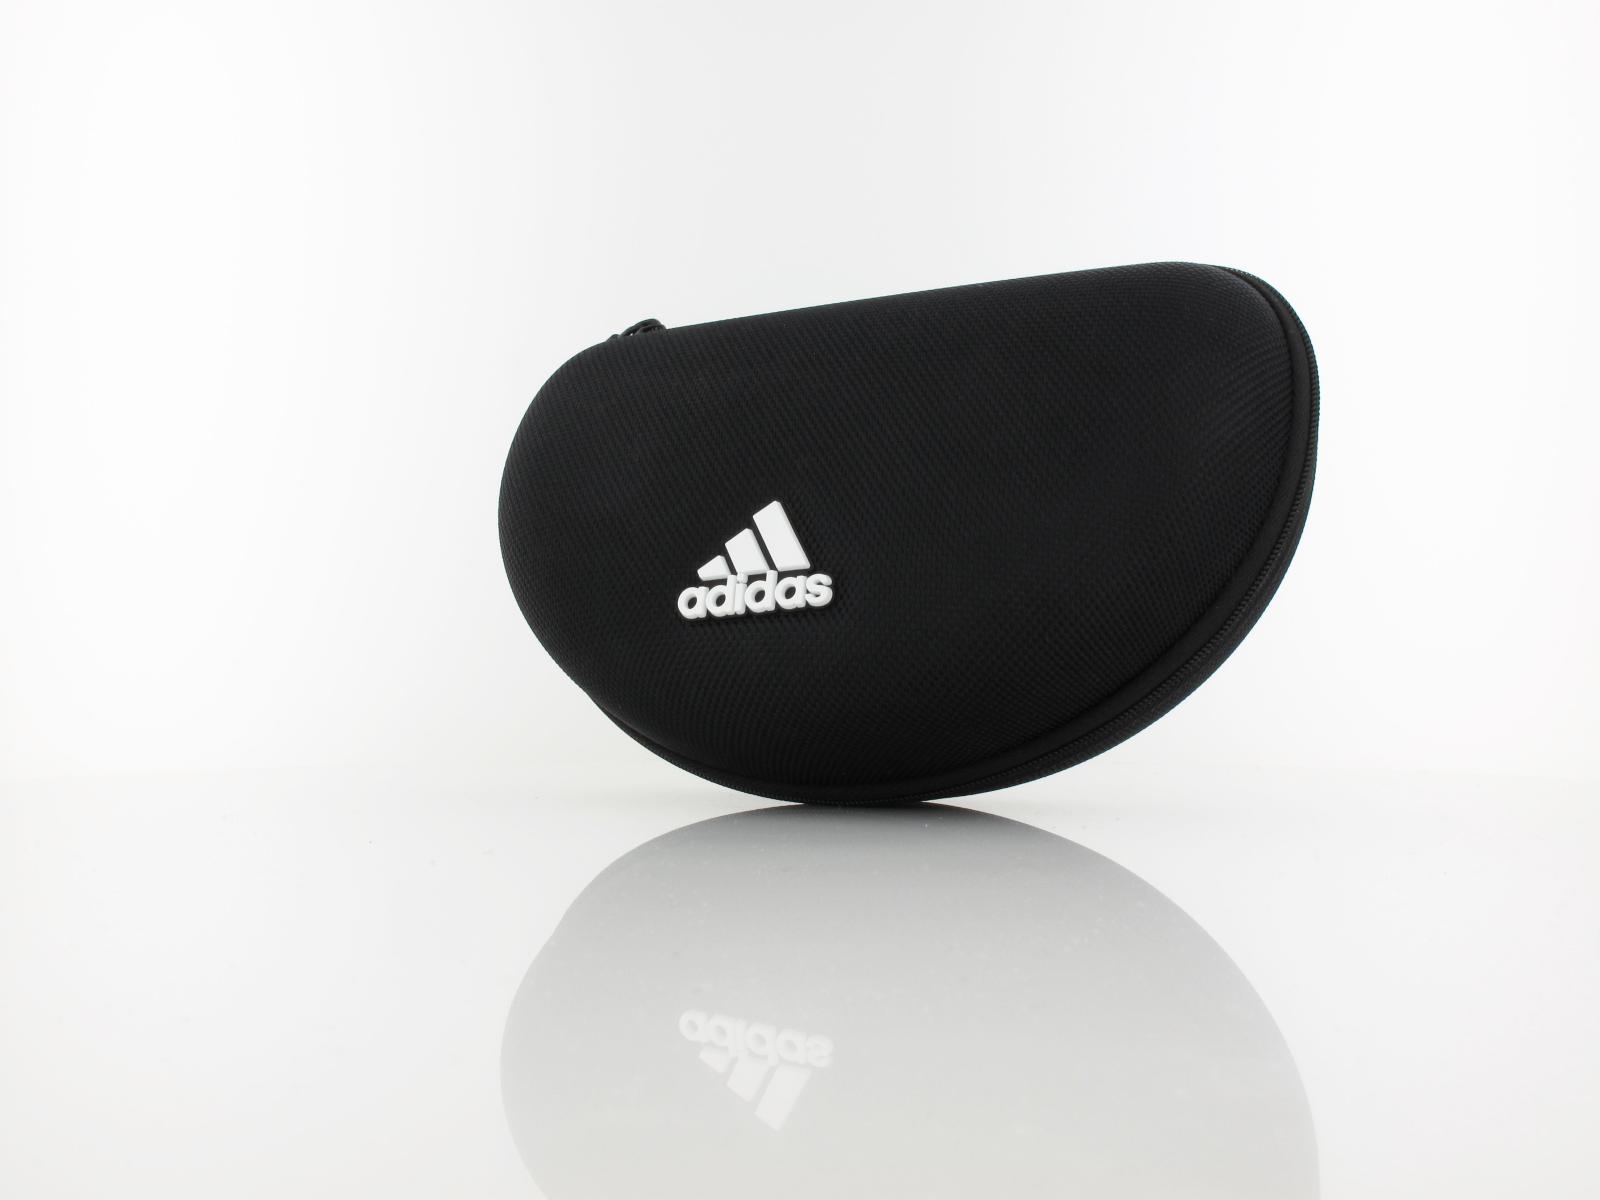 Adidas | SP0015 01C | black / vario mirror orange - orange